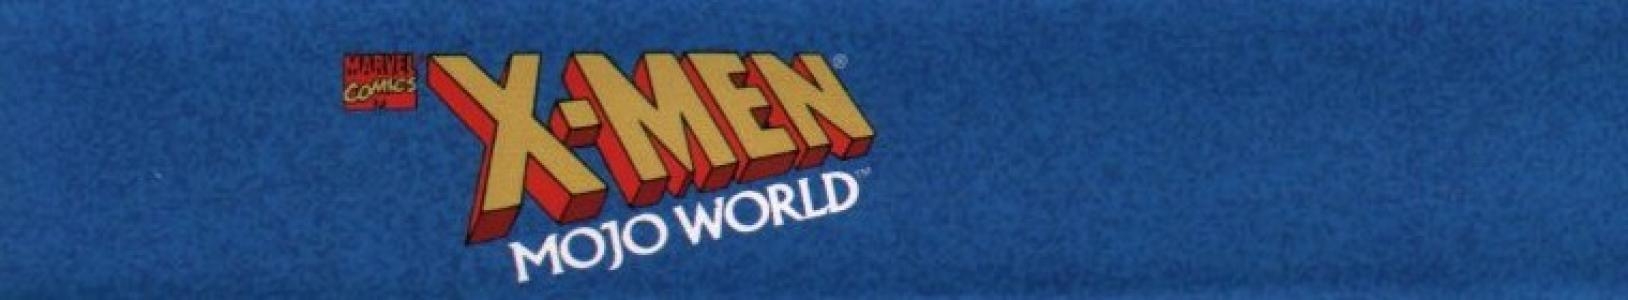 X-Men: Mojo World banner